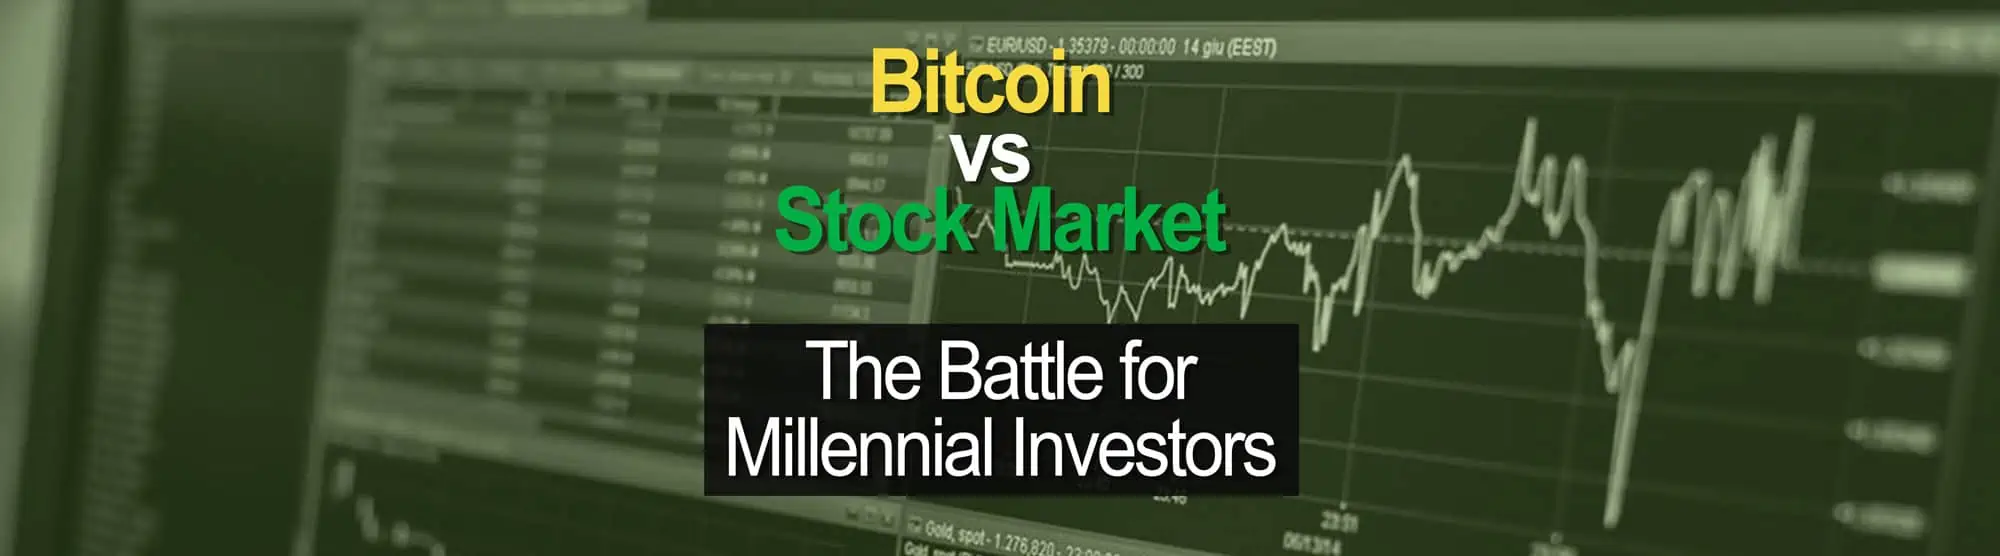 Bitcoin vs the Stock Market